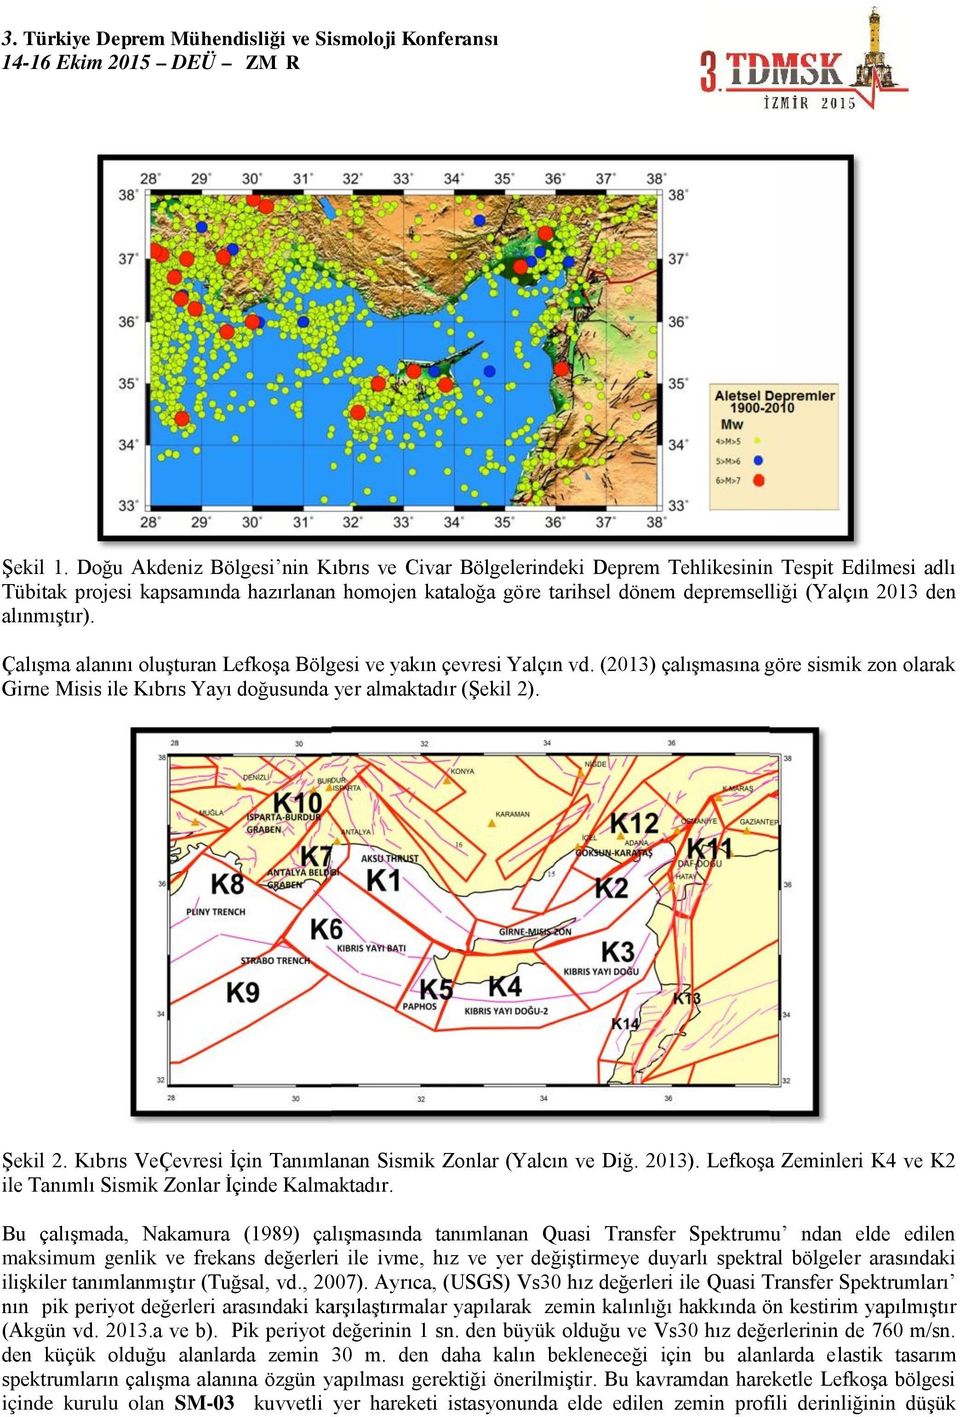 den alınmıştır). Çalışma alanını oluşturan Lefkoşa Bölgesi ve yakın çevresi Yalçın vd. (2013) çalışmasına göre sismik zon olarak Girne Misis ile Kıbrıs Yayı doğusunda yer almaktadır (Şekil 2).